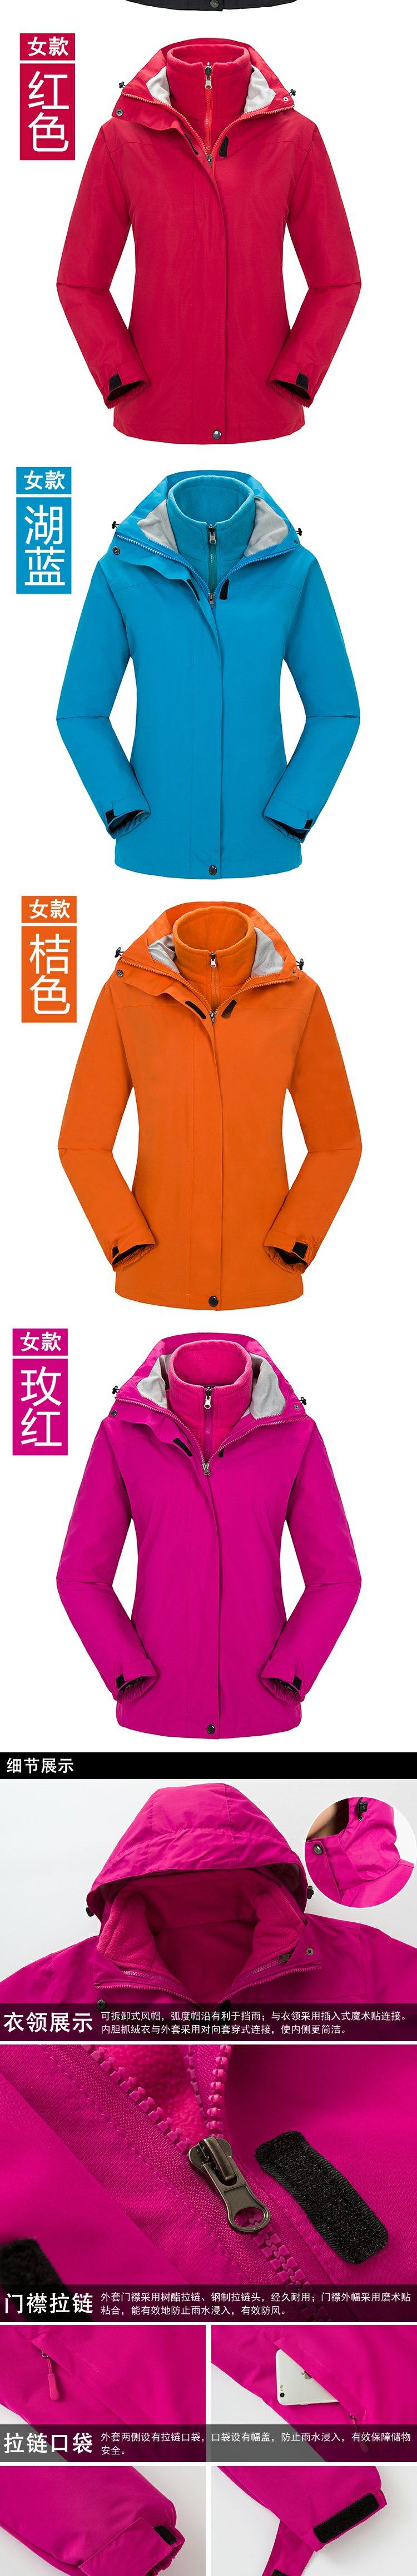 城徒 纯色冲锋衣定制户外防寒服印字绣LOGO 定做冬季两件套滑雪工作服